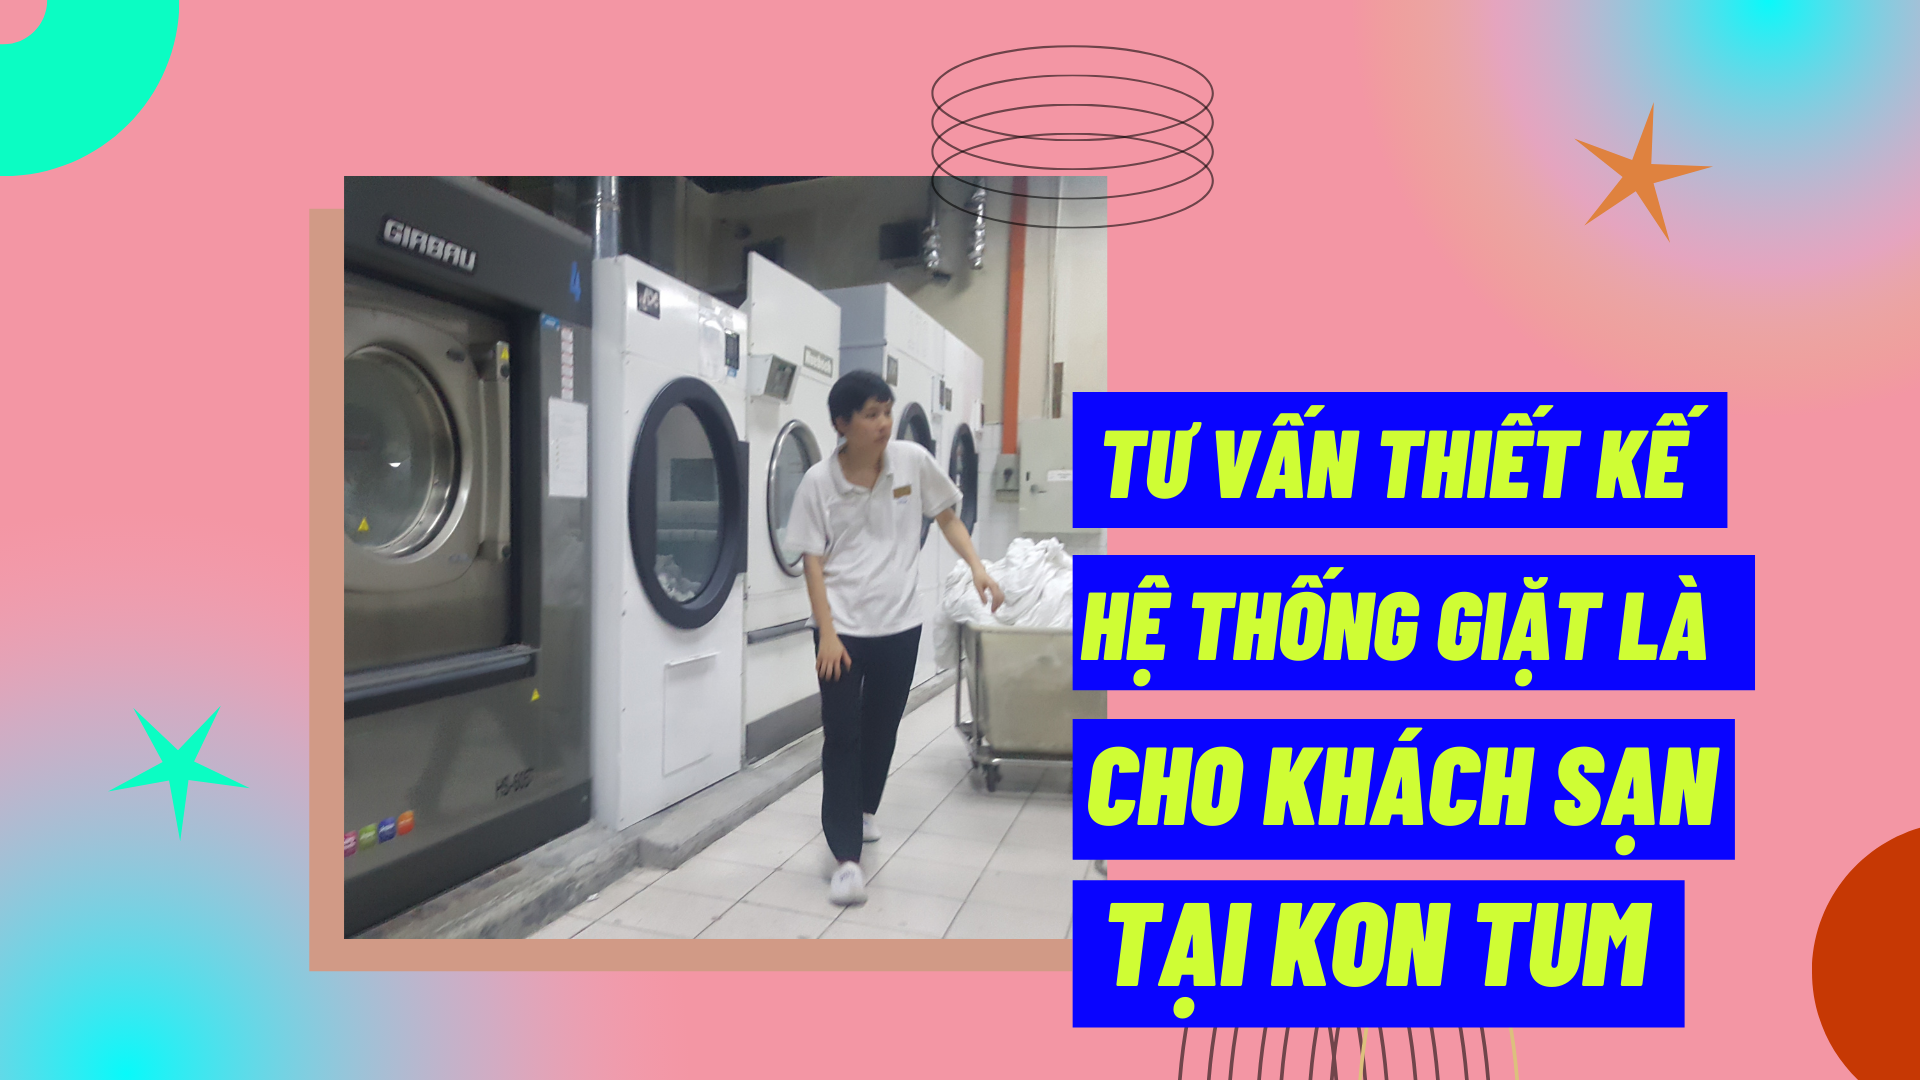 Tư vấn thiết kế hệ thống giặt là cho khách sạn tại Kon Tum